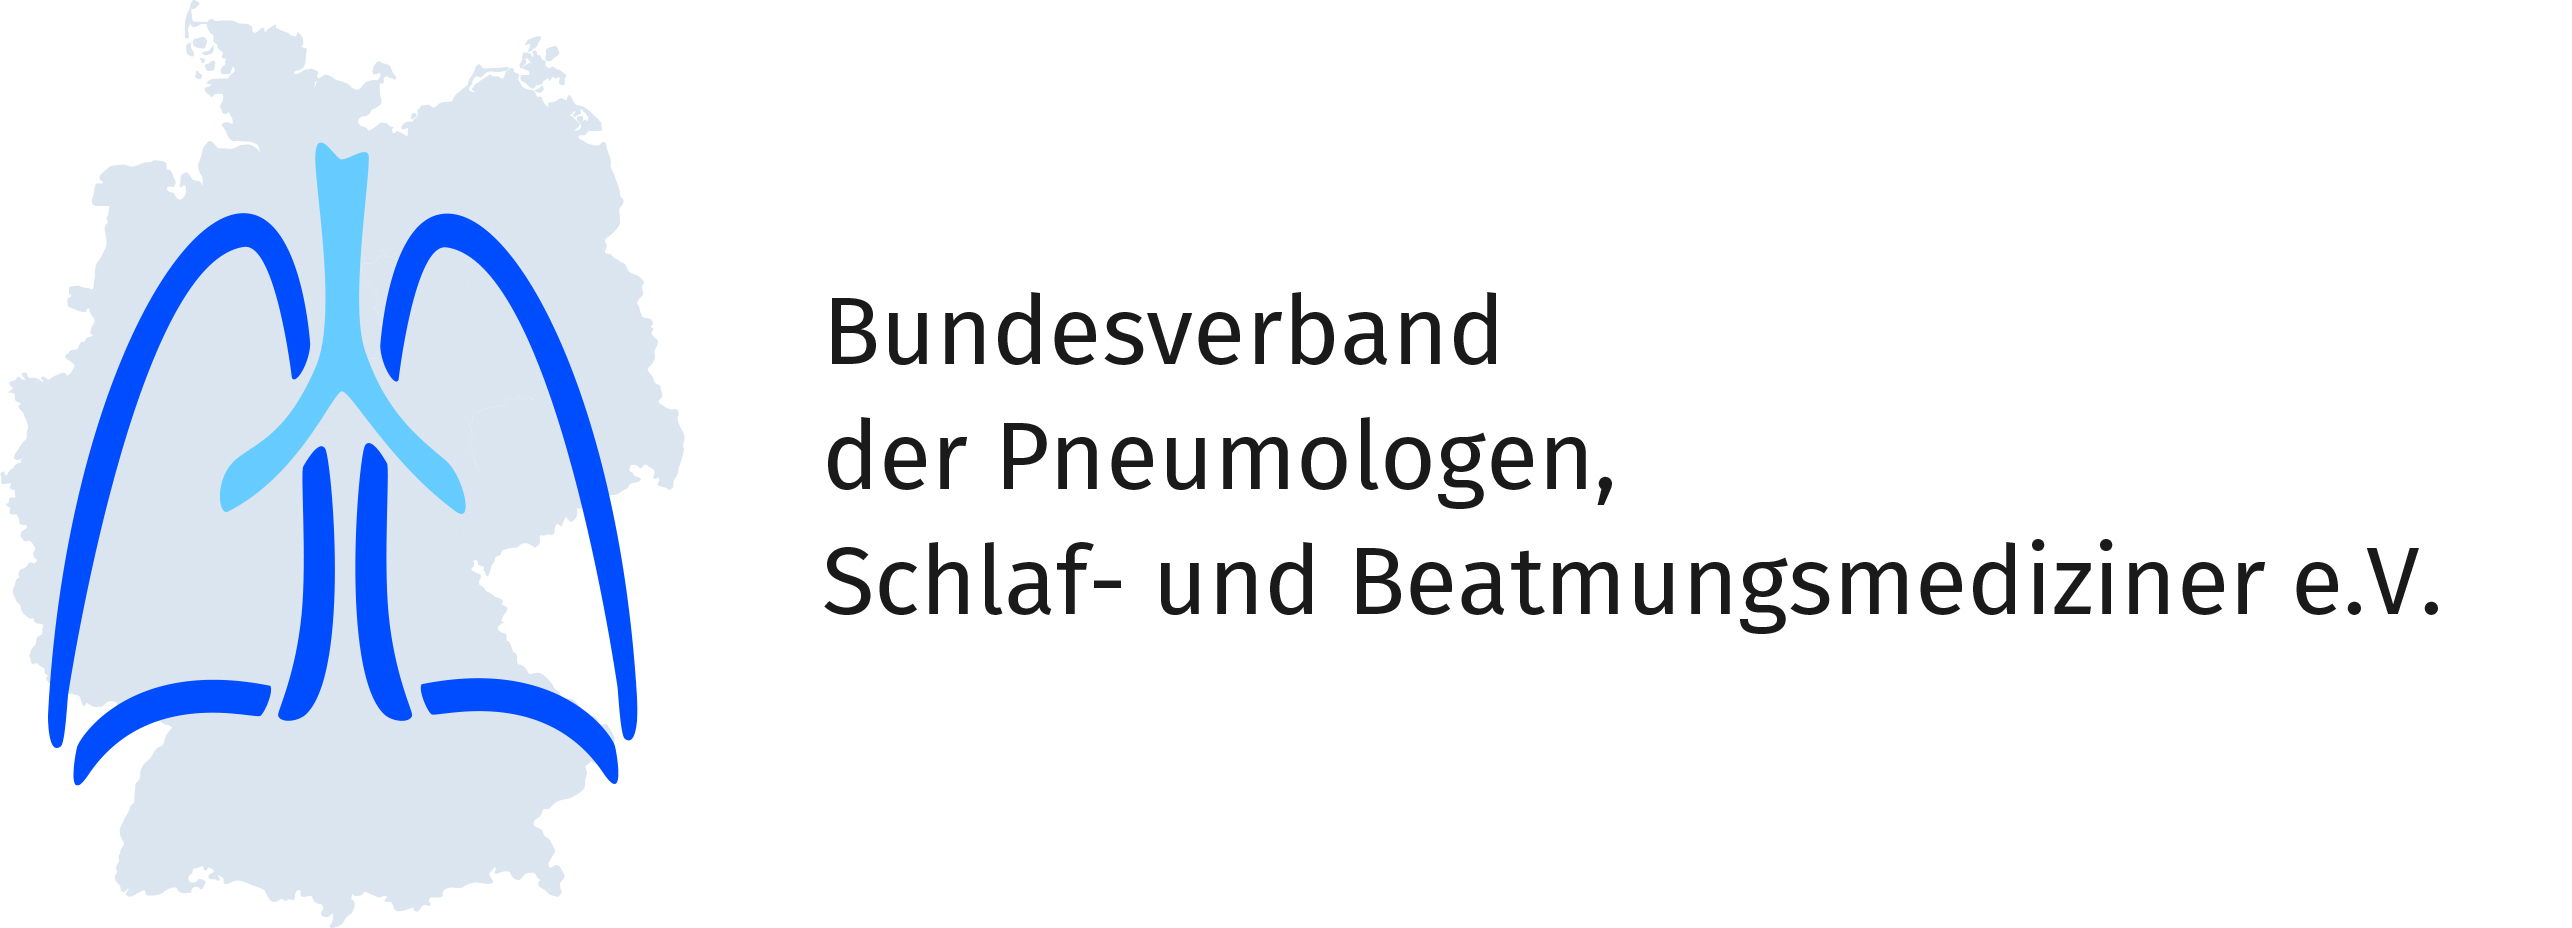 Bundesverband der Pneumologie, Schlaf- und Beatmungsmediziner Logo